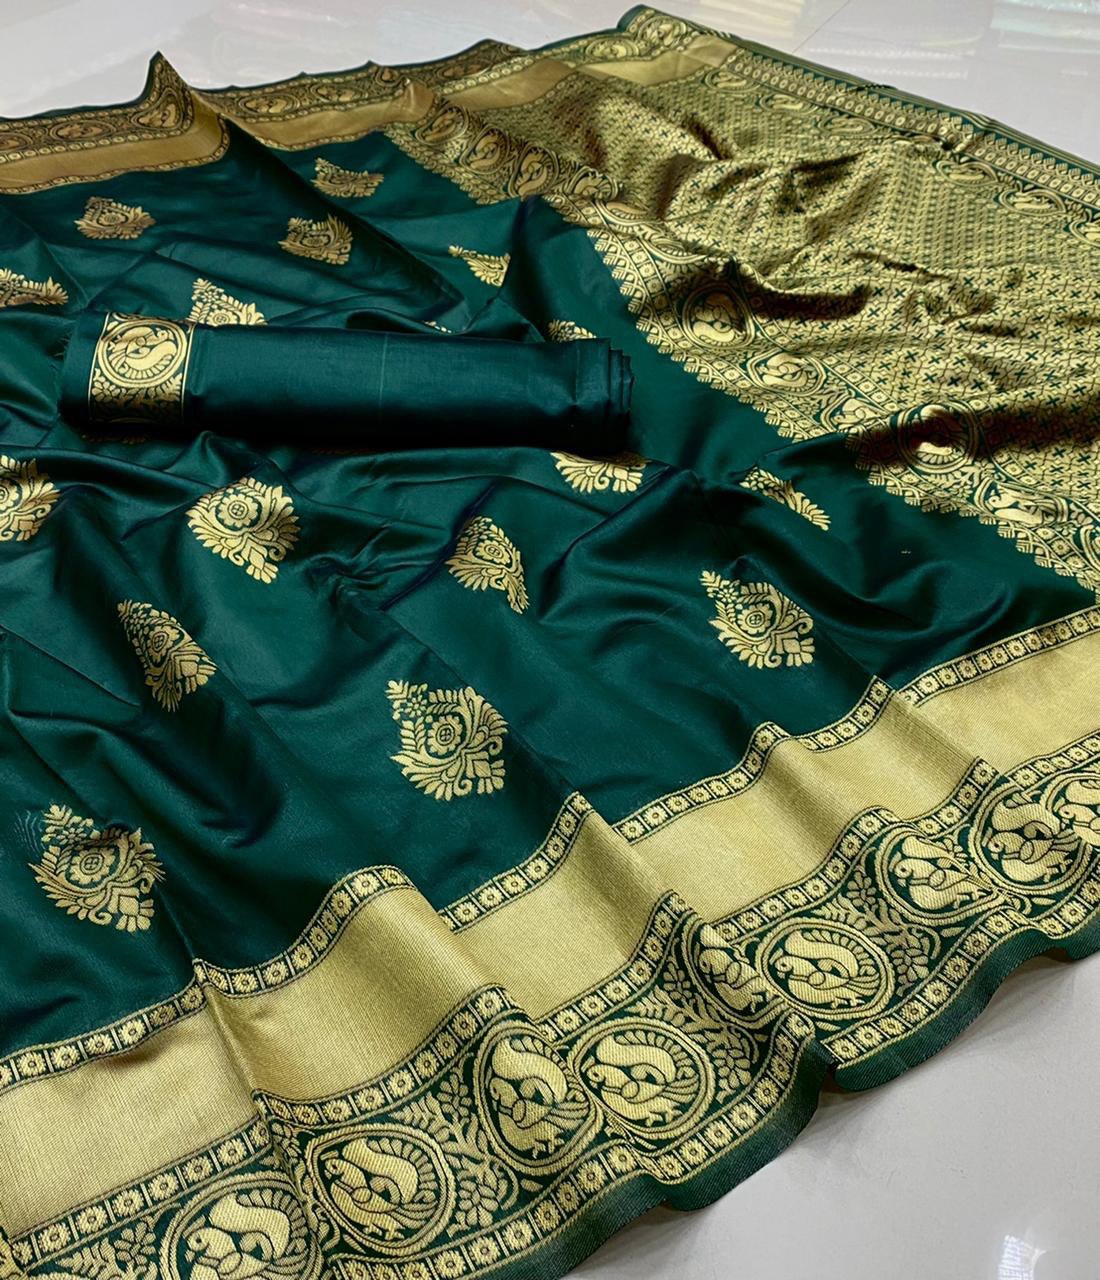 Women's Floral Woven Design Banarasi Soft Silk Saree with Meena Work